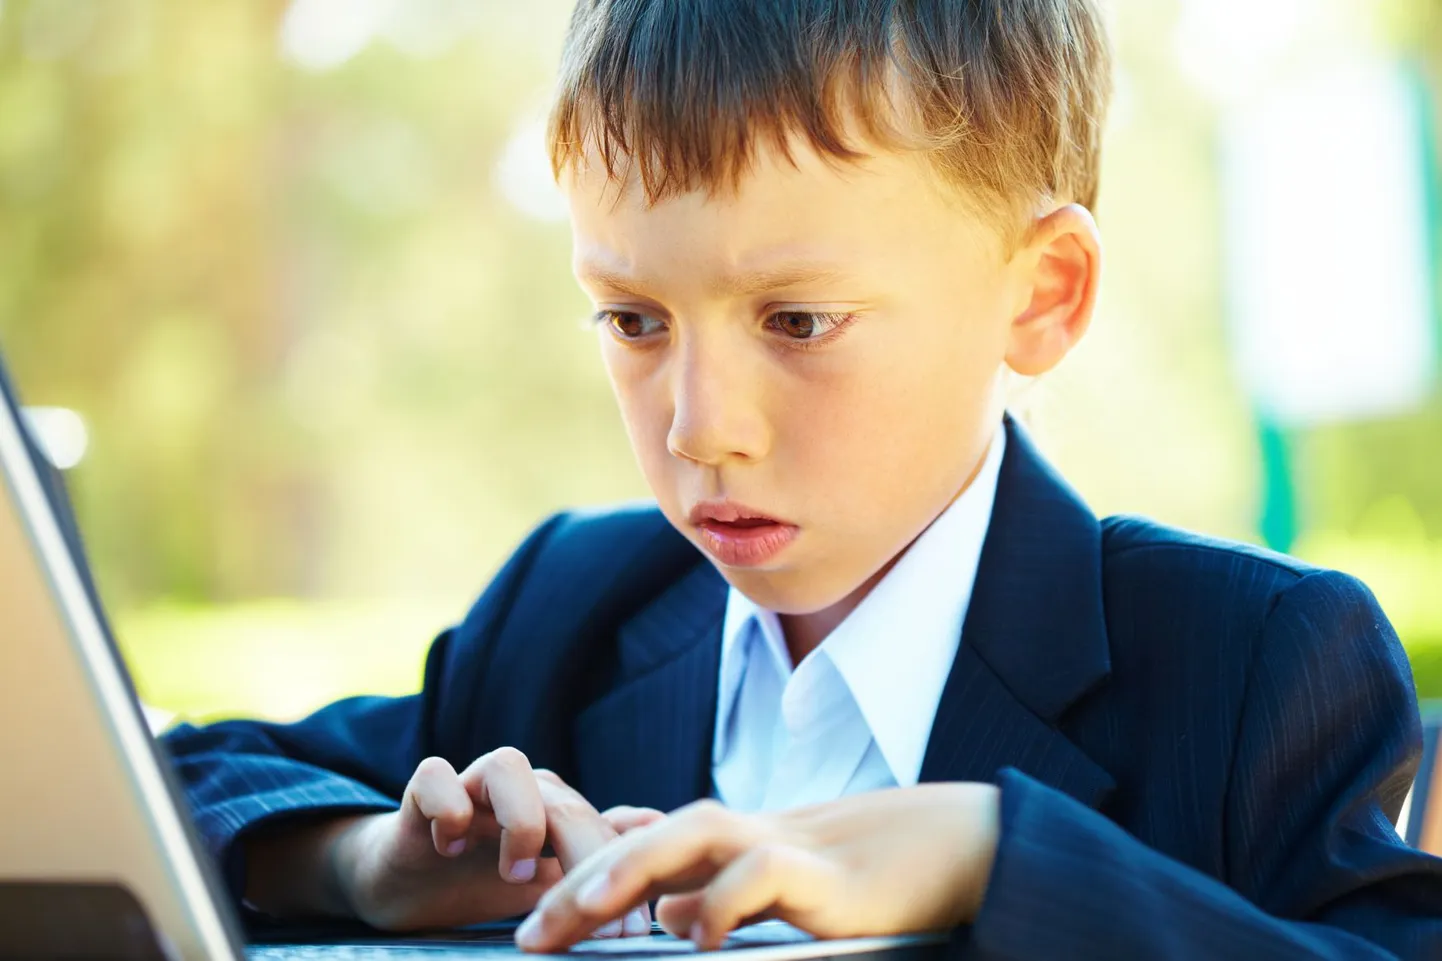 Aeg-ajalt tasub kontrollida, mida laps internetis teeb ja kui palju ta endast avaldab. Tuleta lapsele meelde, mis ohud teda virtuaalmaailmas ümbritsevad.